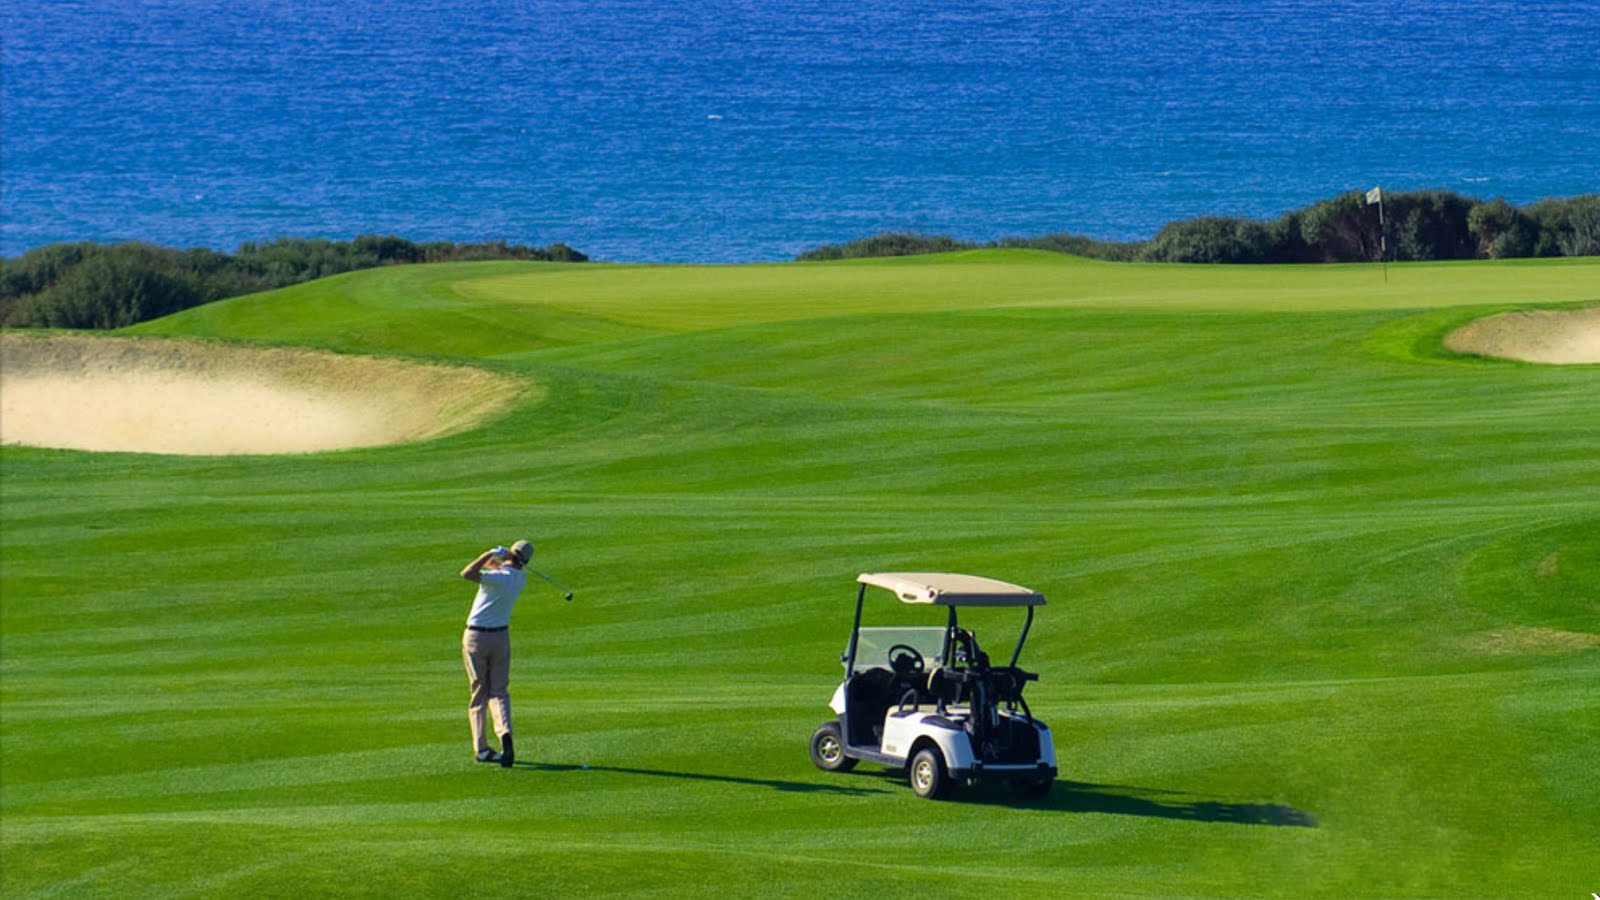 Quản lý sân golf hiệu quả với thiết bị bộ đàm cầm tay